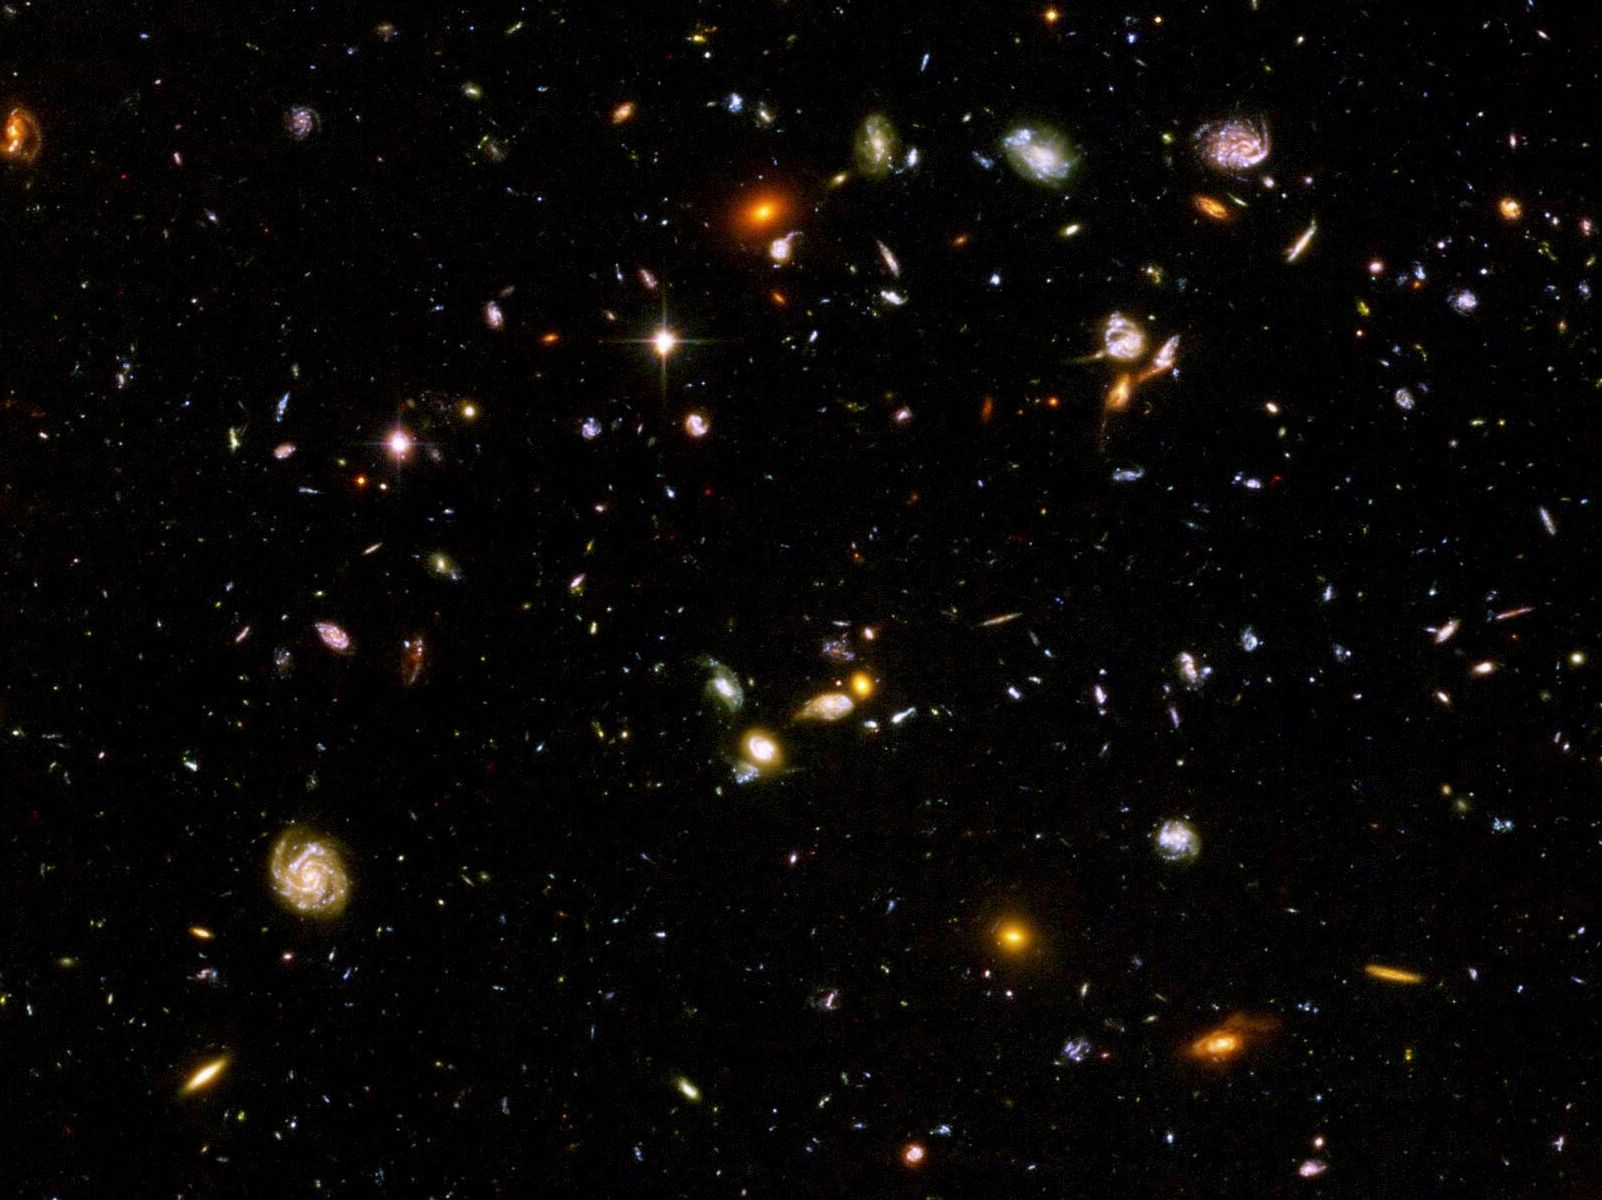 Hubble ultra deep field wallpaper